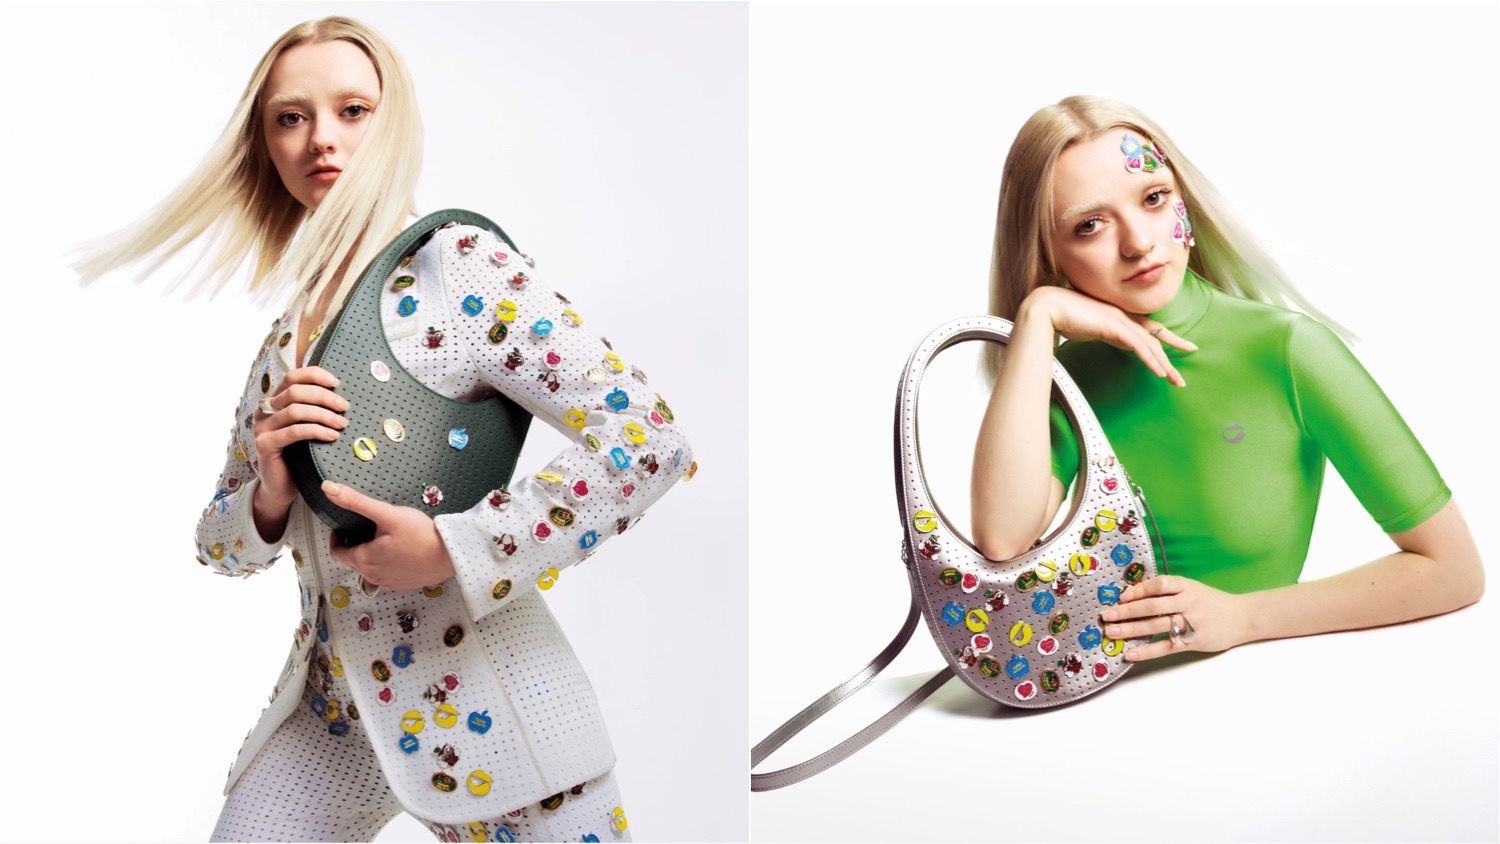 Maisie Williams models Coperni's vegan apple leather bags